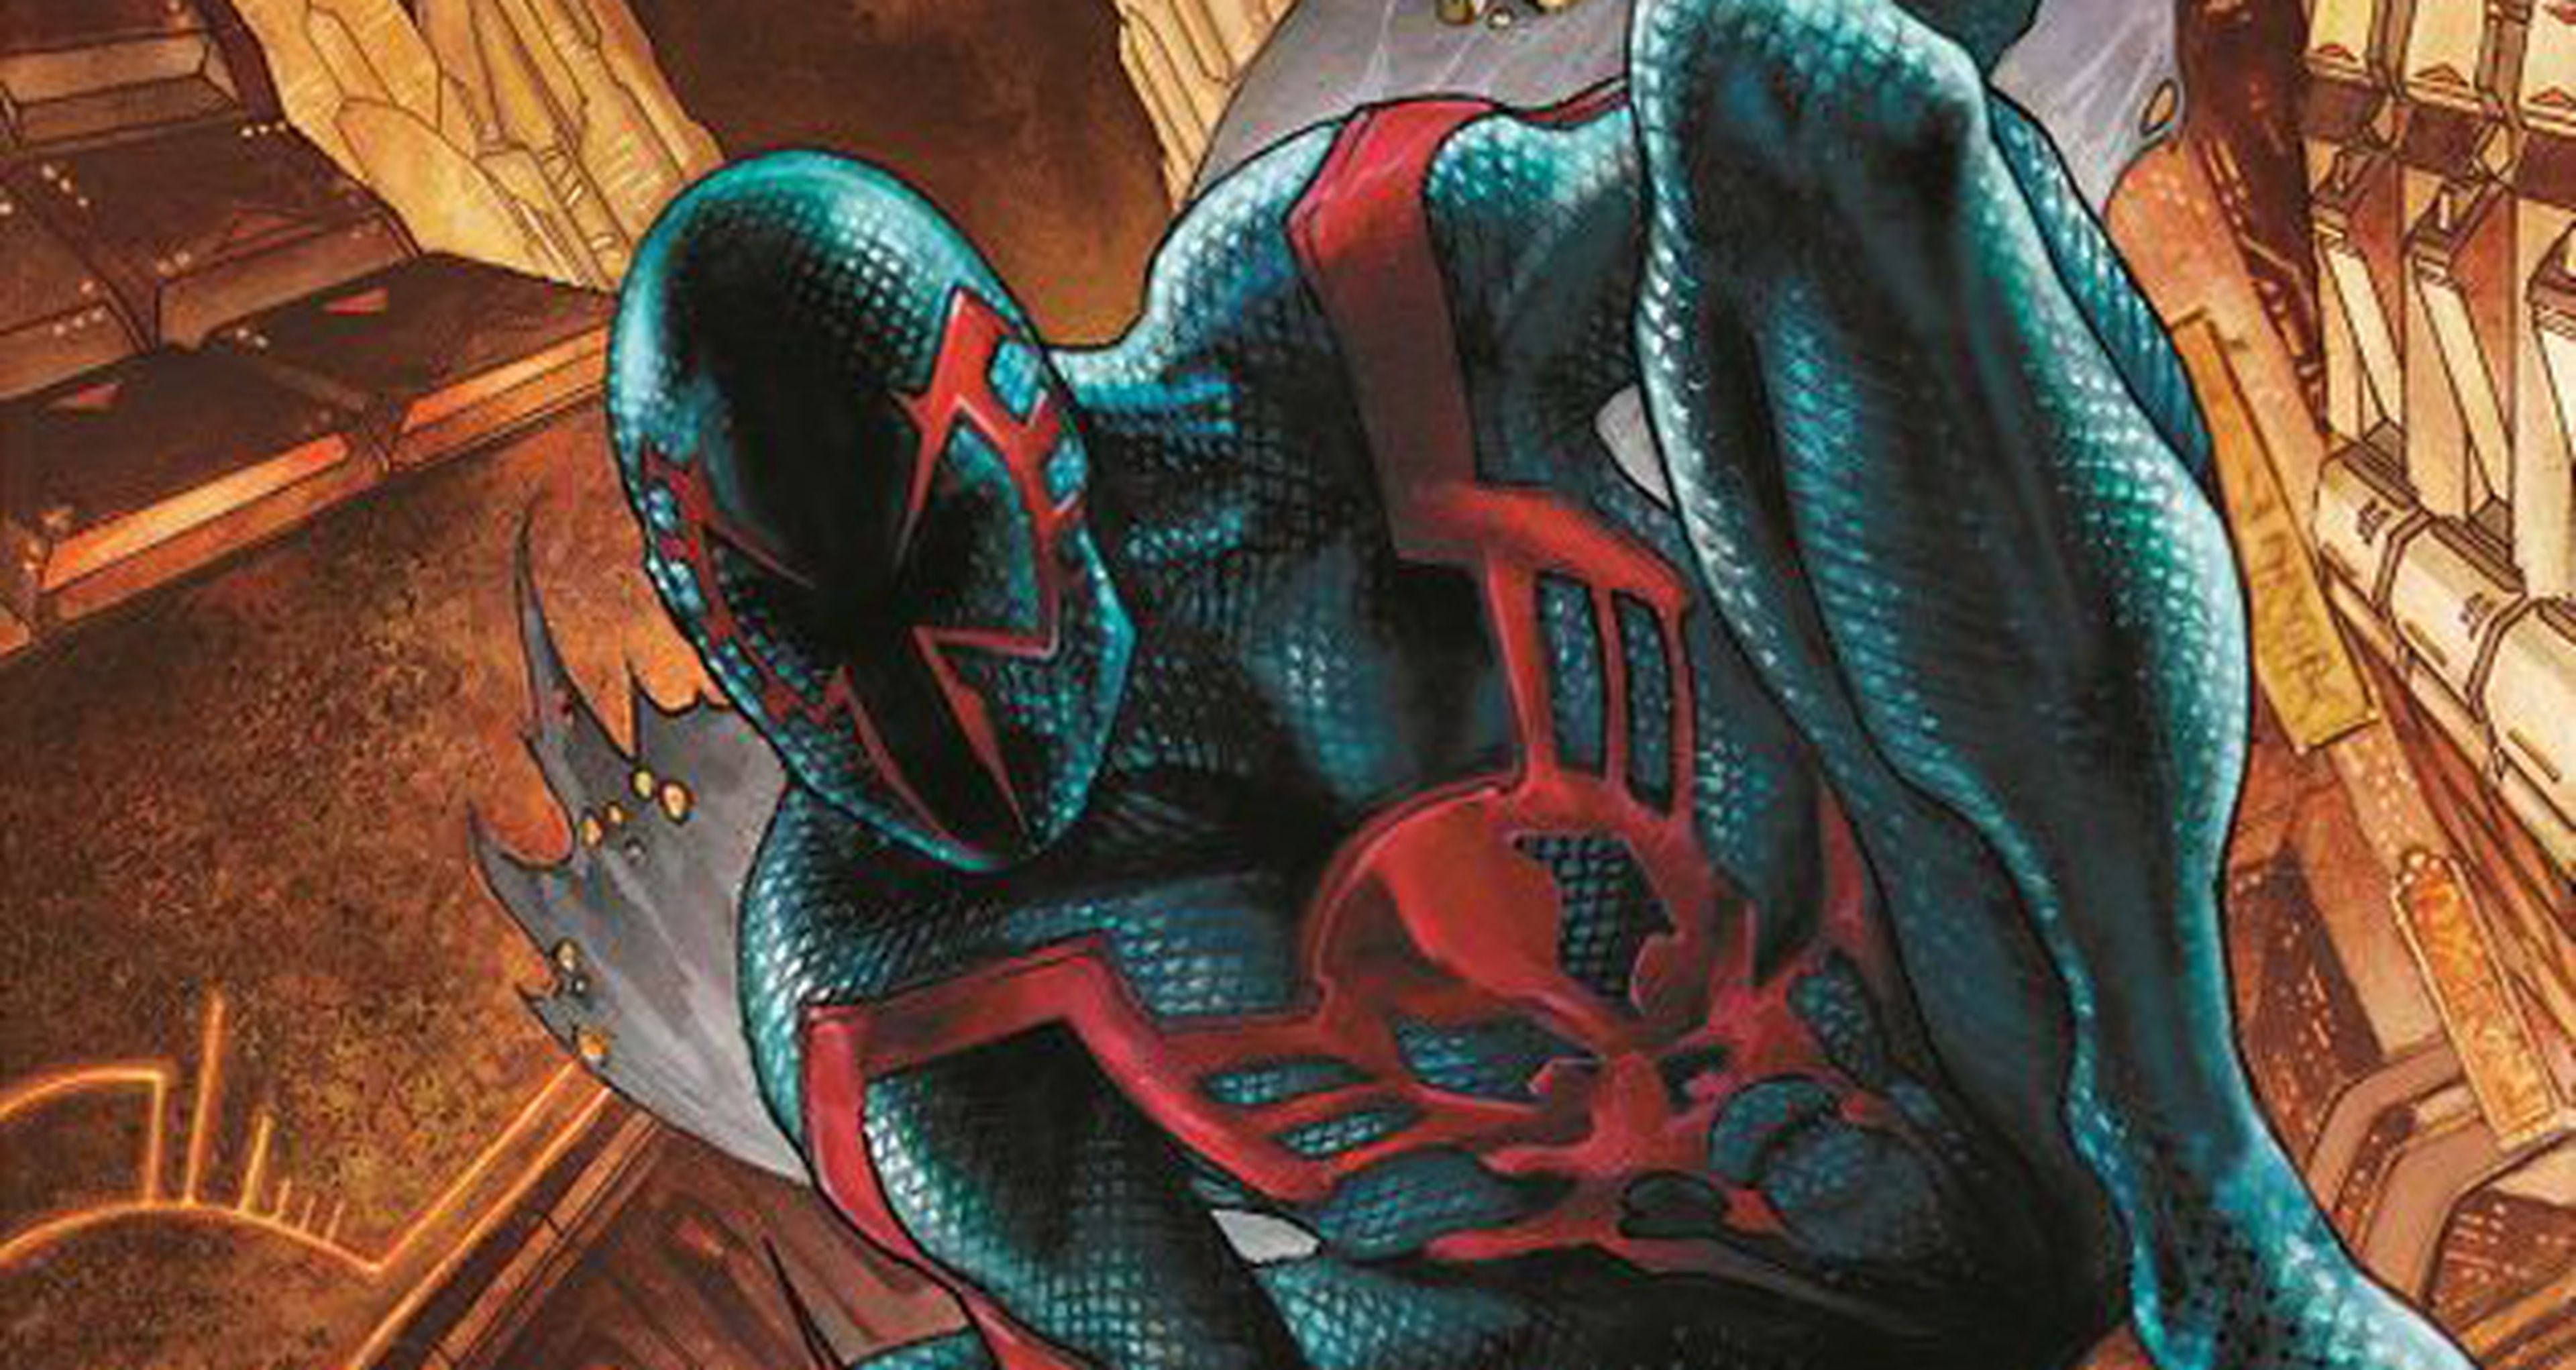 Spider-man 2099 volverá a tener serie de cómic